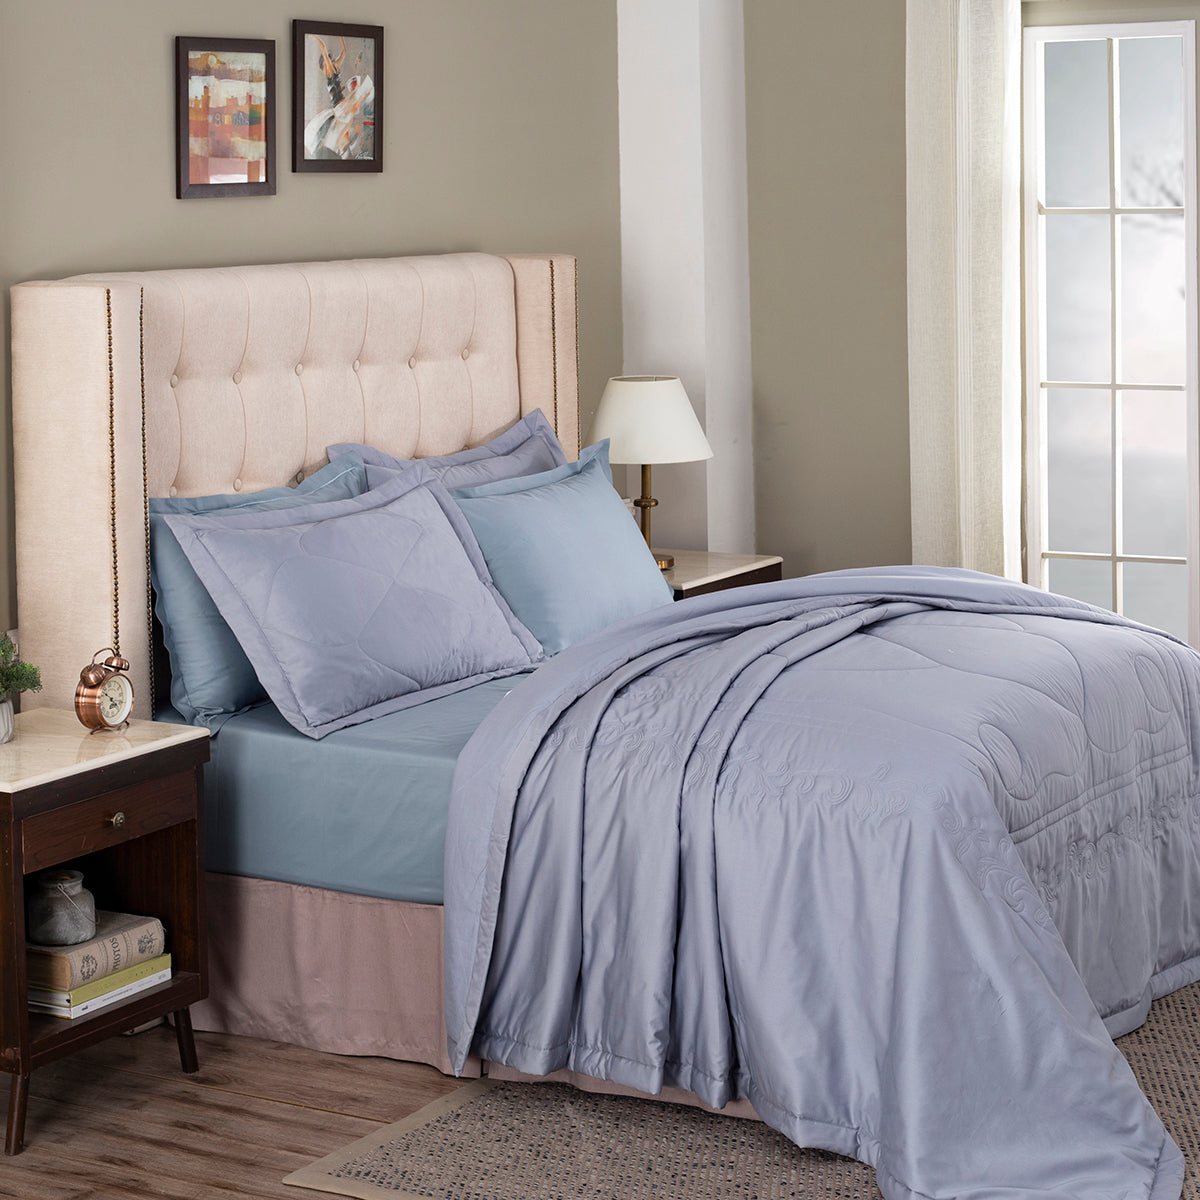 Grandeur Vintage Floret Summer AC Quilt/Quilted Bed Cover/Comforter Blue